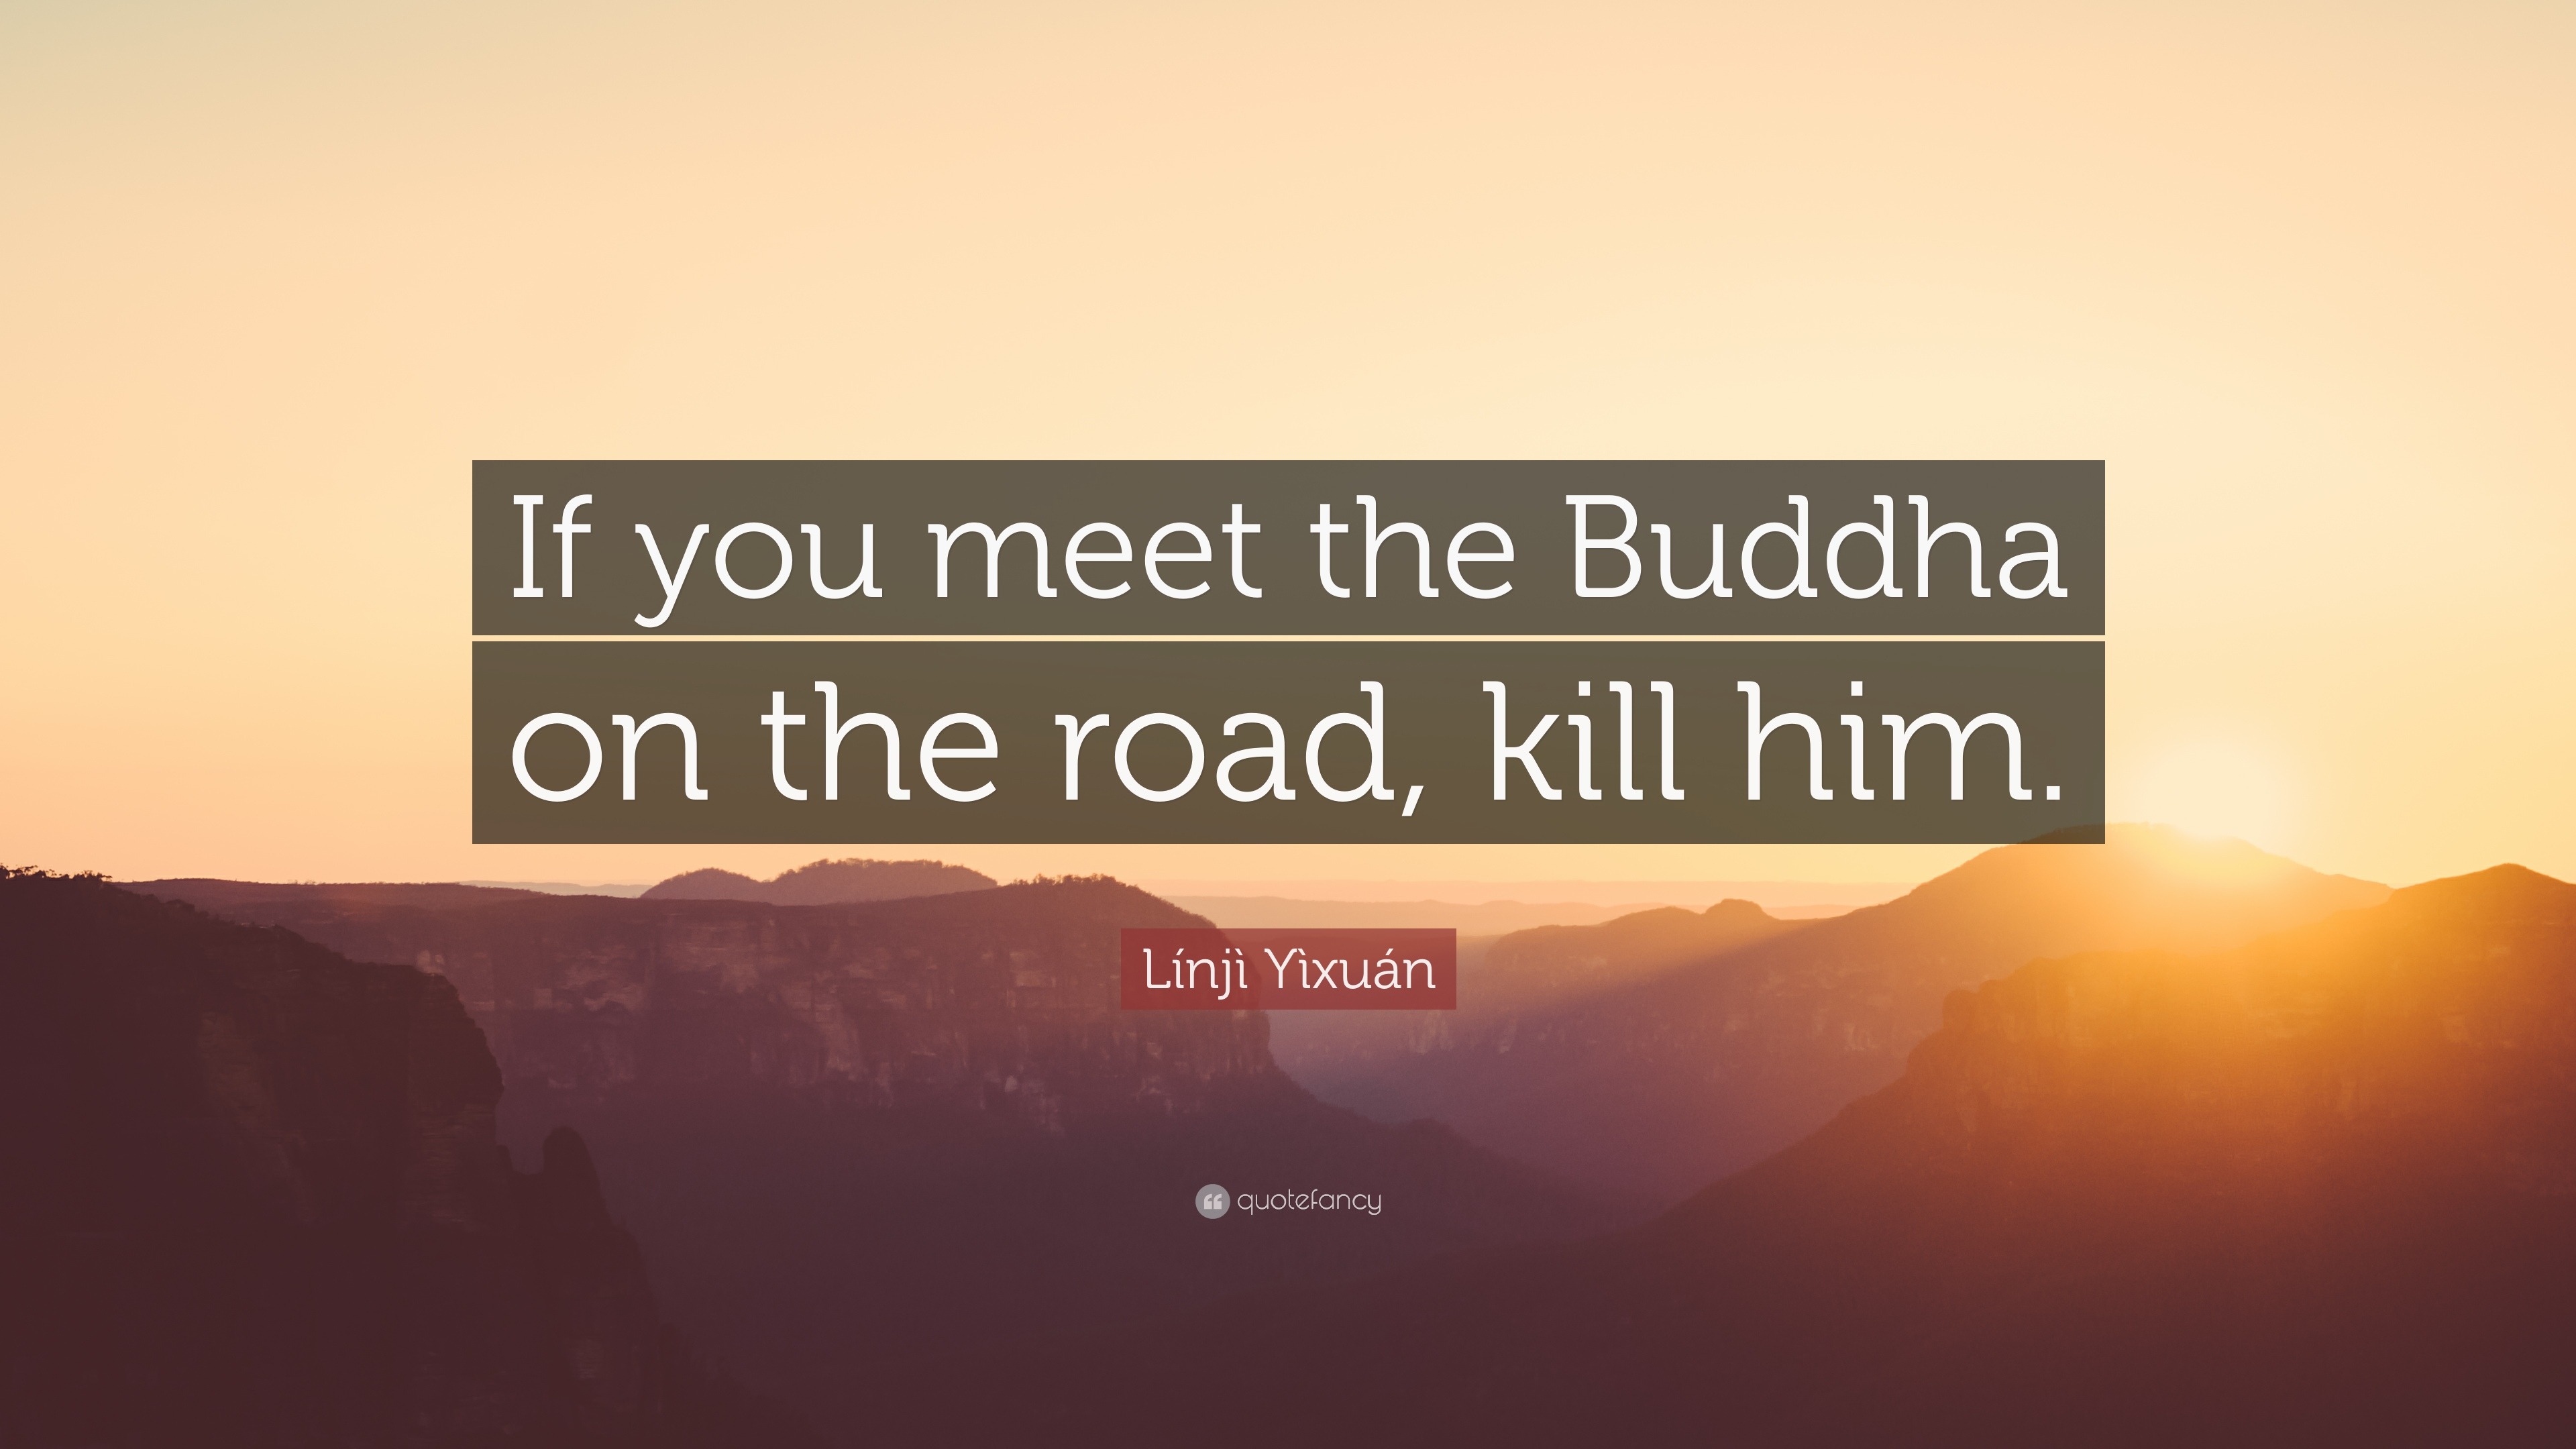 Proberen Hick zo Línjì Yìxuán Quote: “If you meet the Buddha on the road, kill him.”